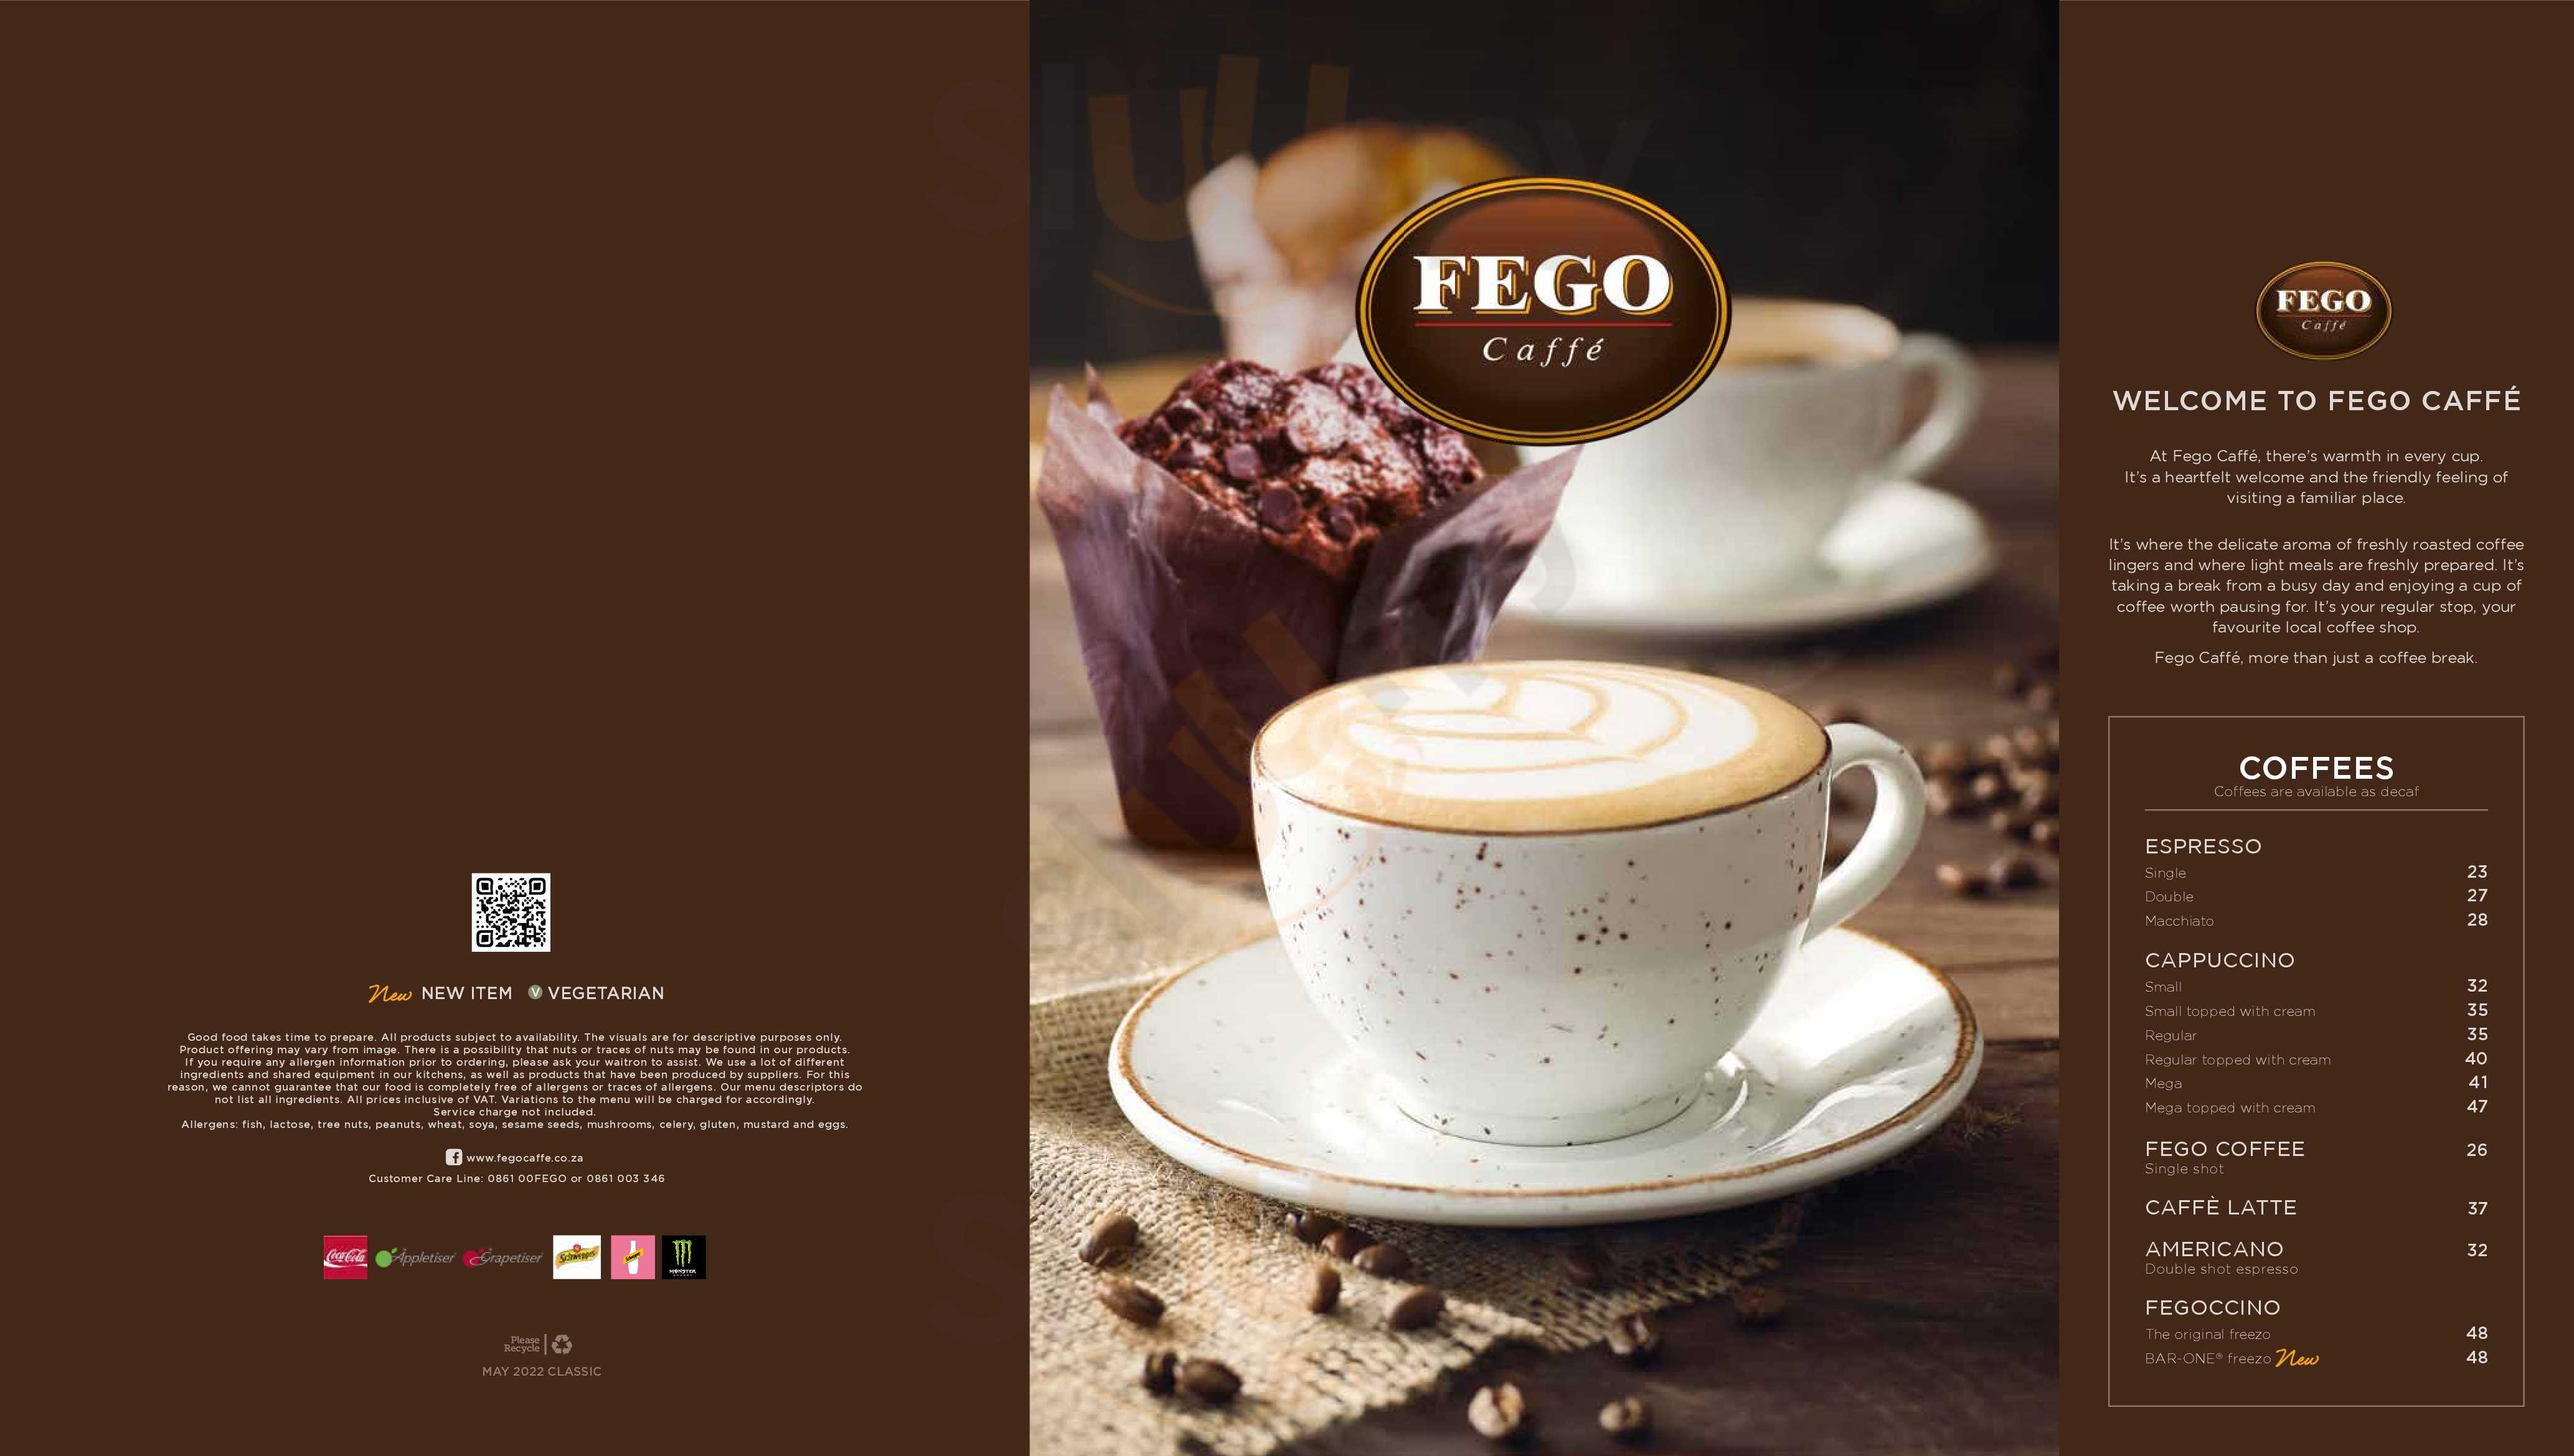 Fego Caffe Johannesburg Menu - 1